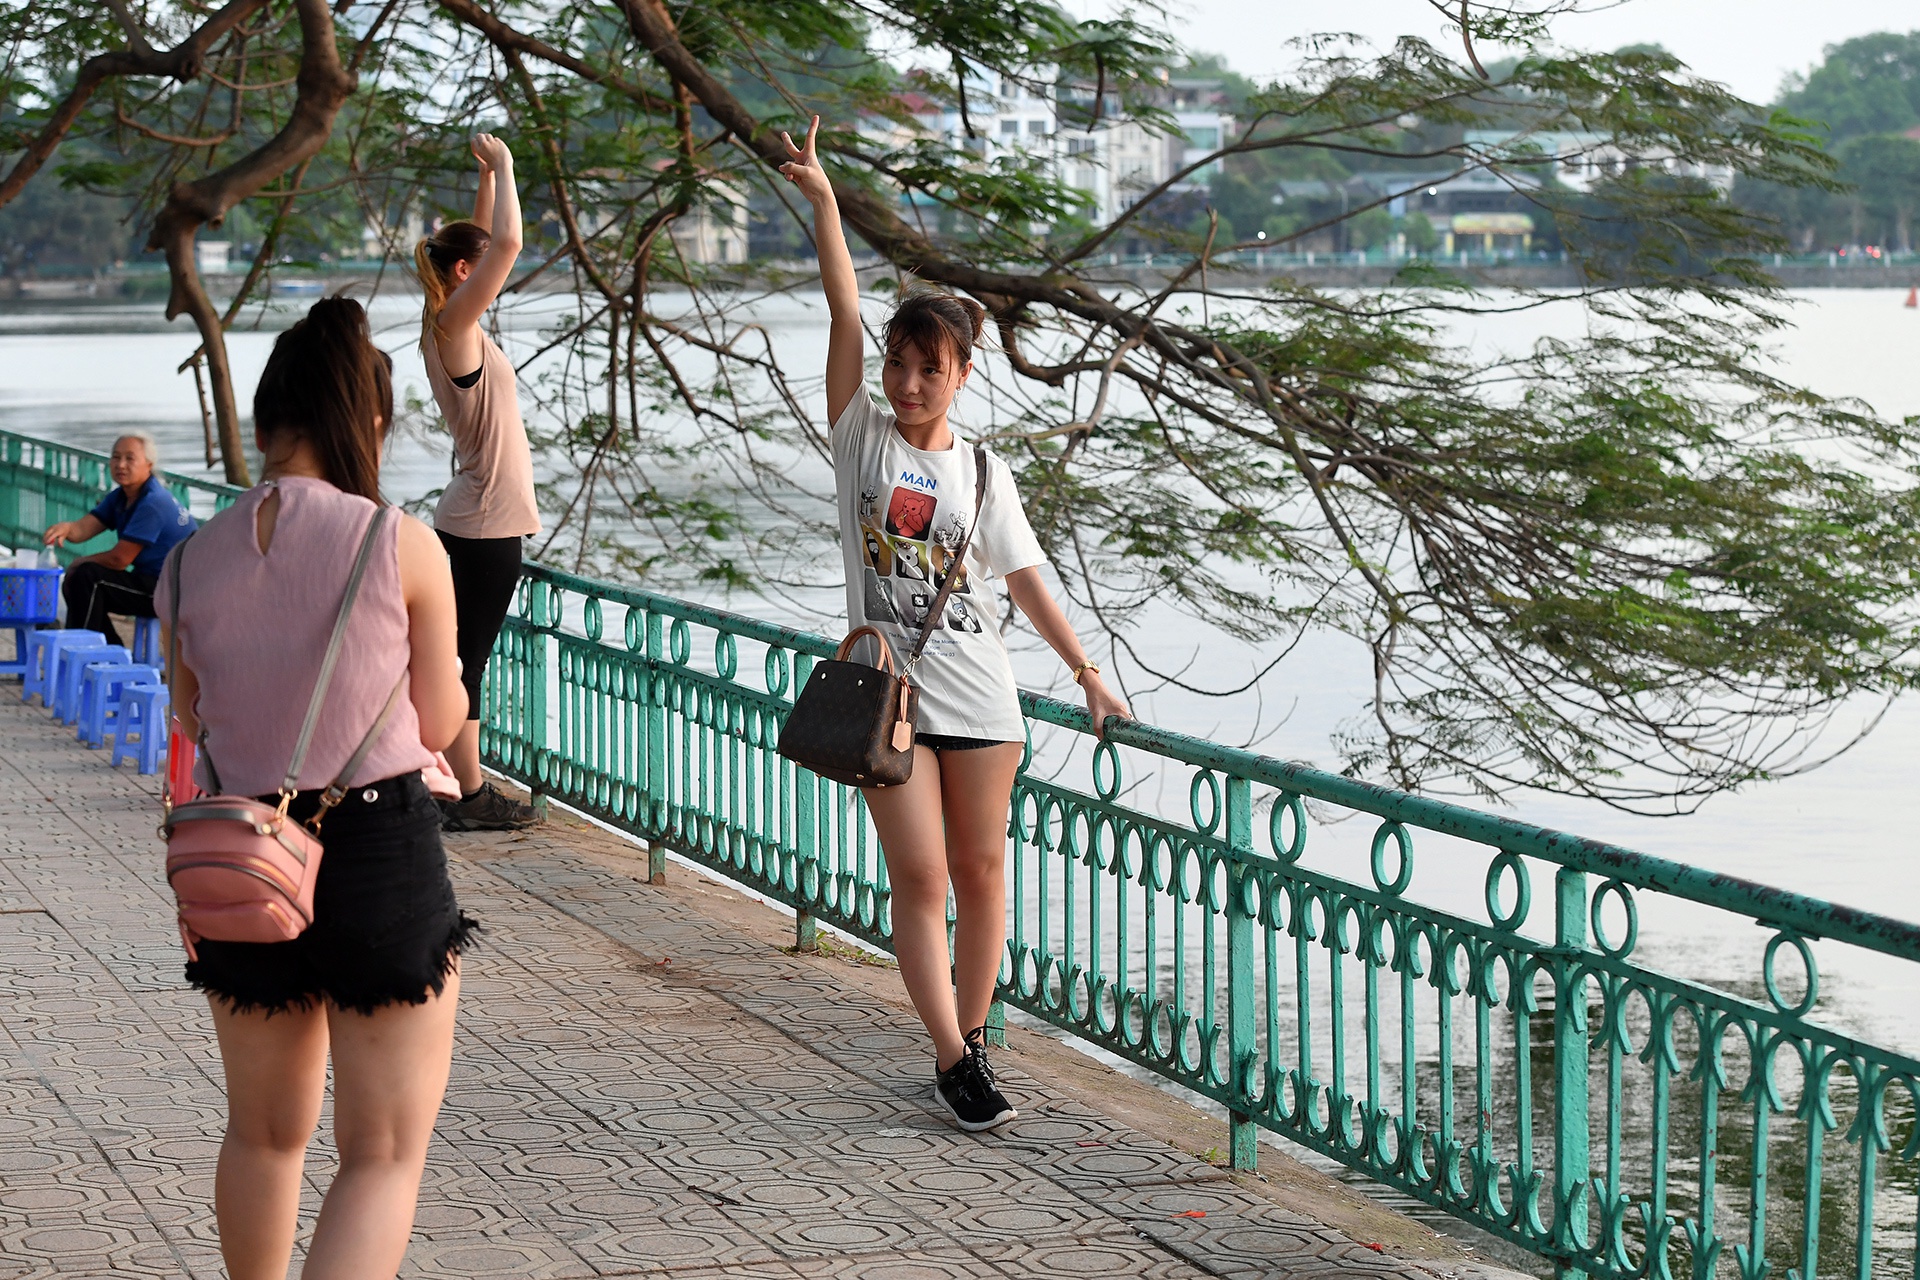 Hồ Tây - điểm đến vui chơi của nhiều người trẻ, cả Việt Nam lẫn nước ngoài - trong bức ảnh chụp năm 2018. Ảnh: Đoàn Tùng.